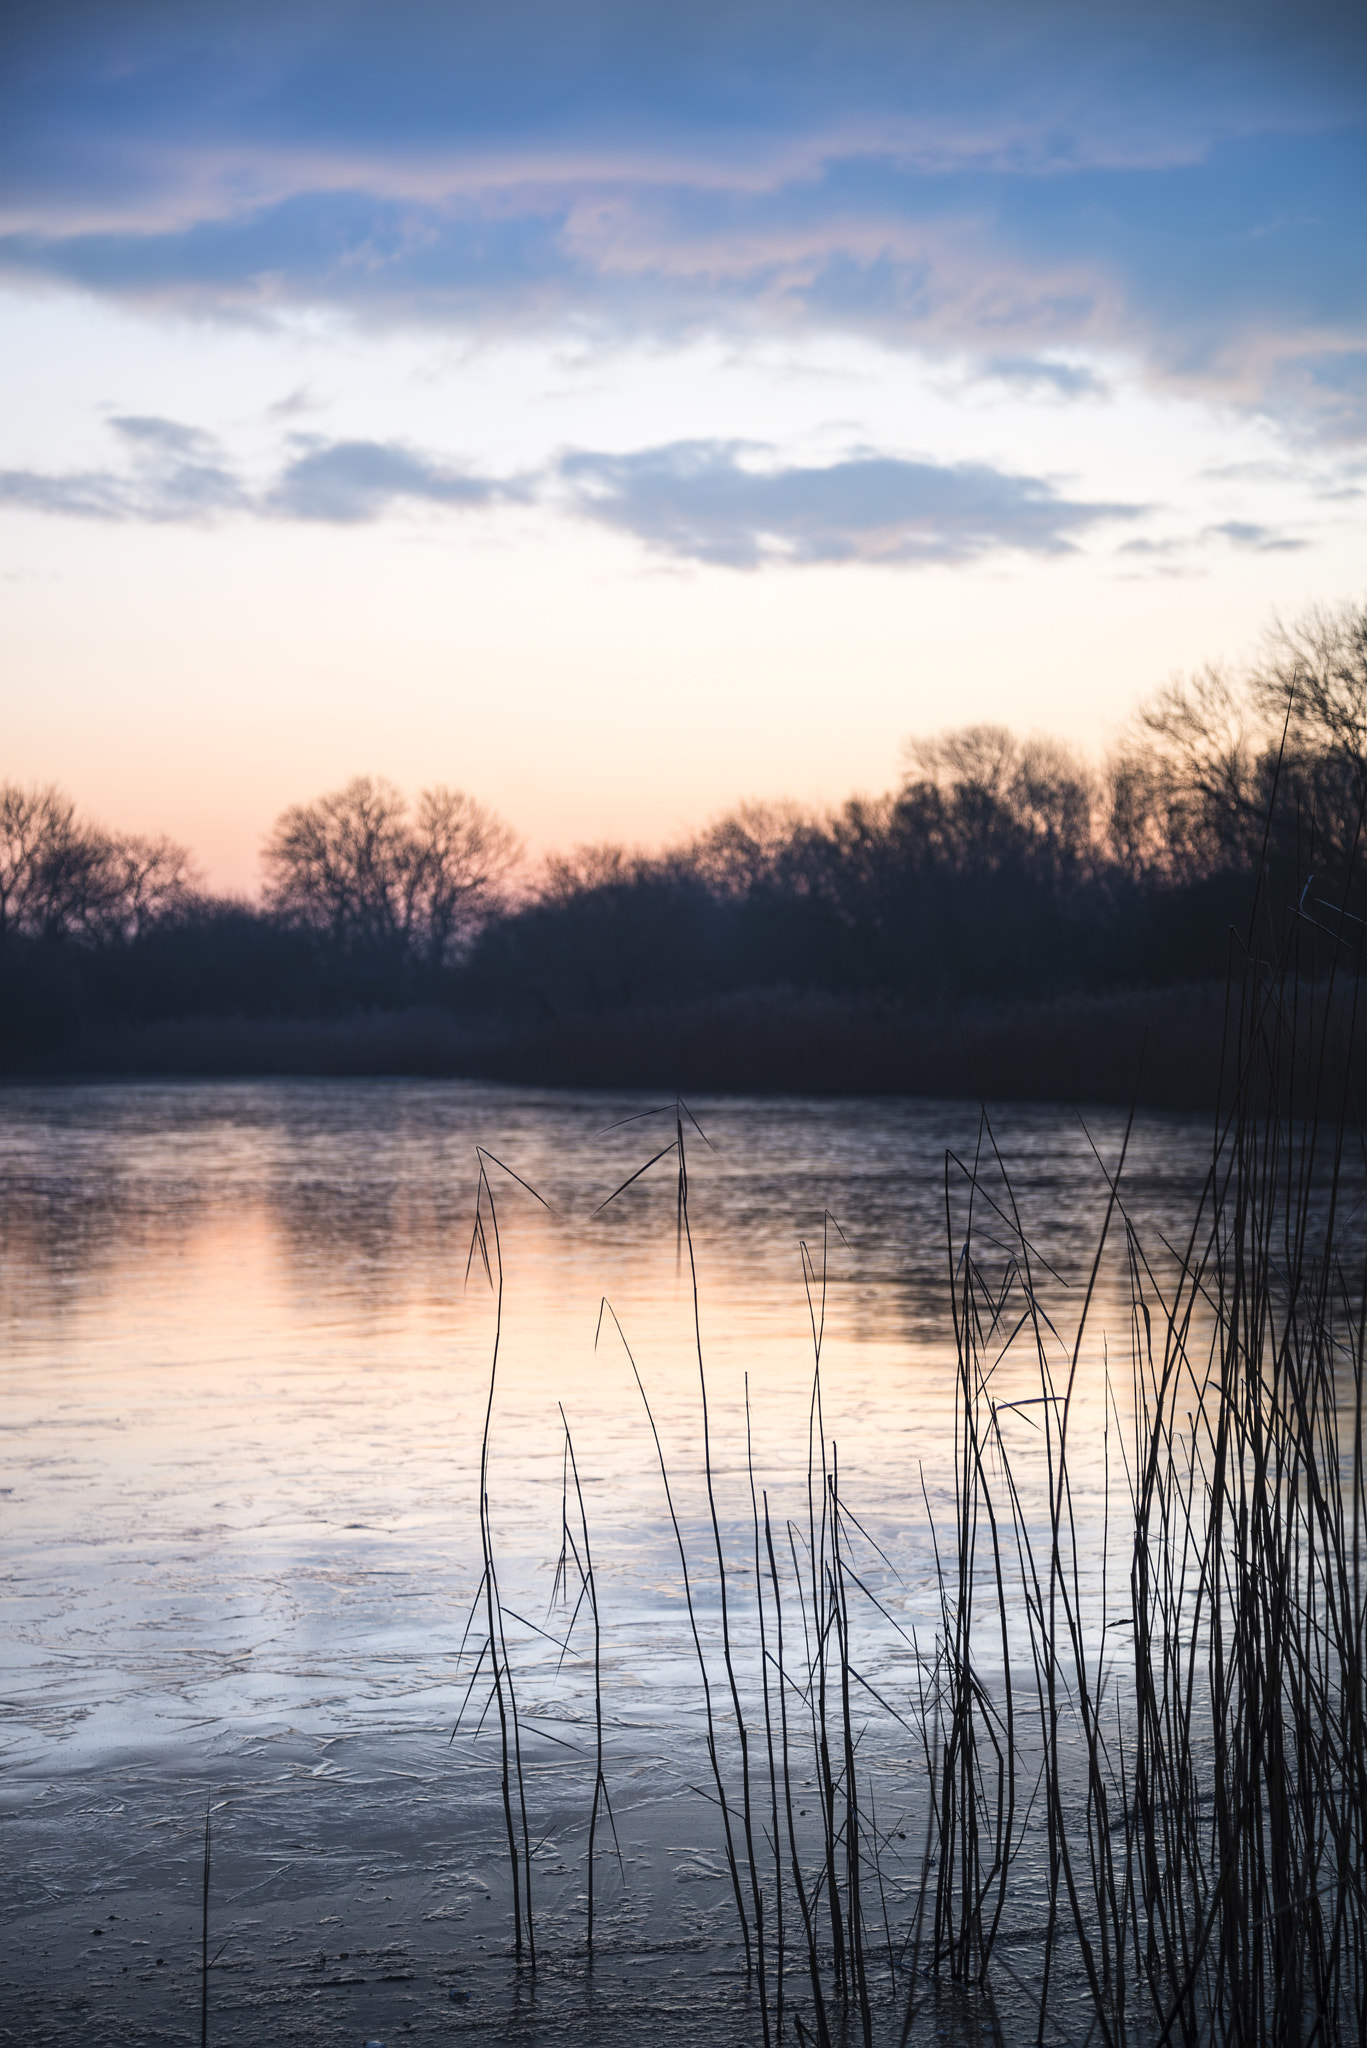 Nikon D800 + Nikon AF-S Nikkor 24-85mm F3.5-4.5G ED VR sample photo. Stunning colorful winter sunrise over reeds on lake in cotswolds photography